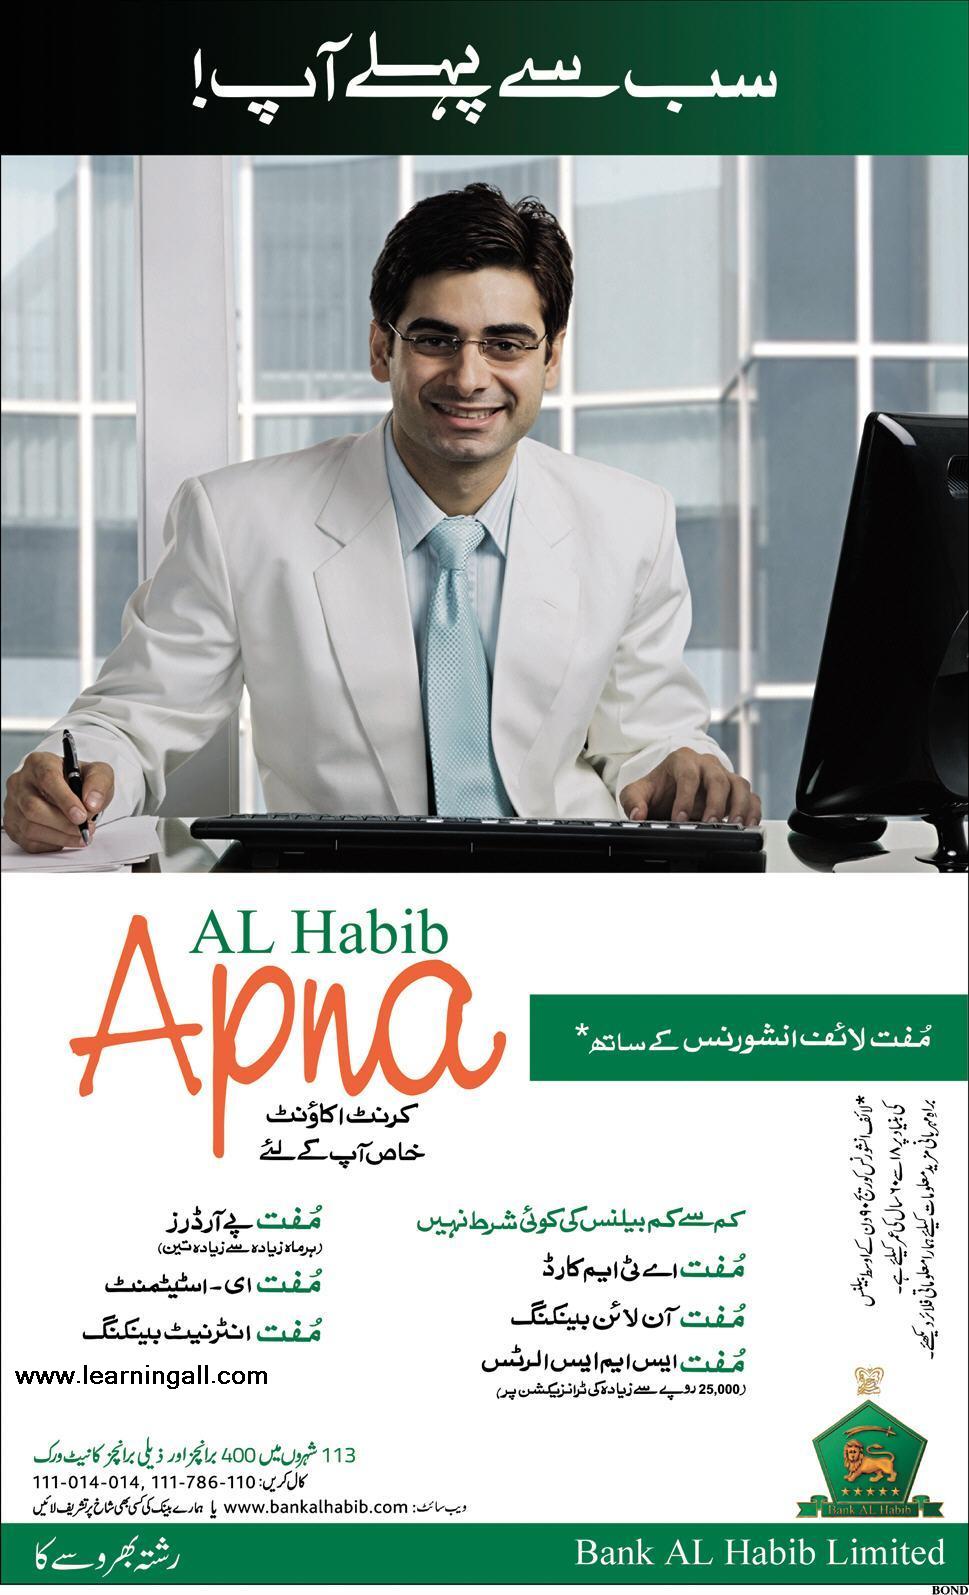 Al Habib Bank Apna Current Account Details and Benefits